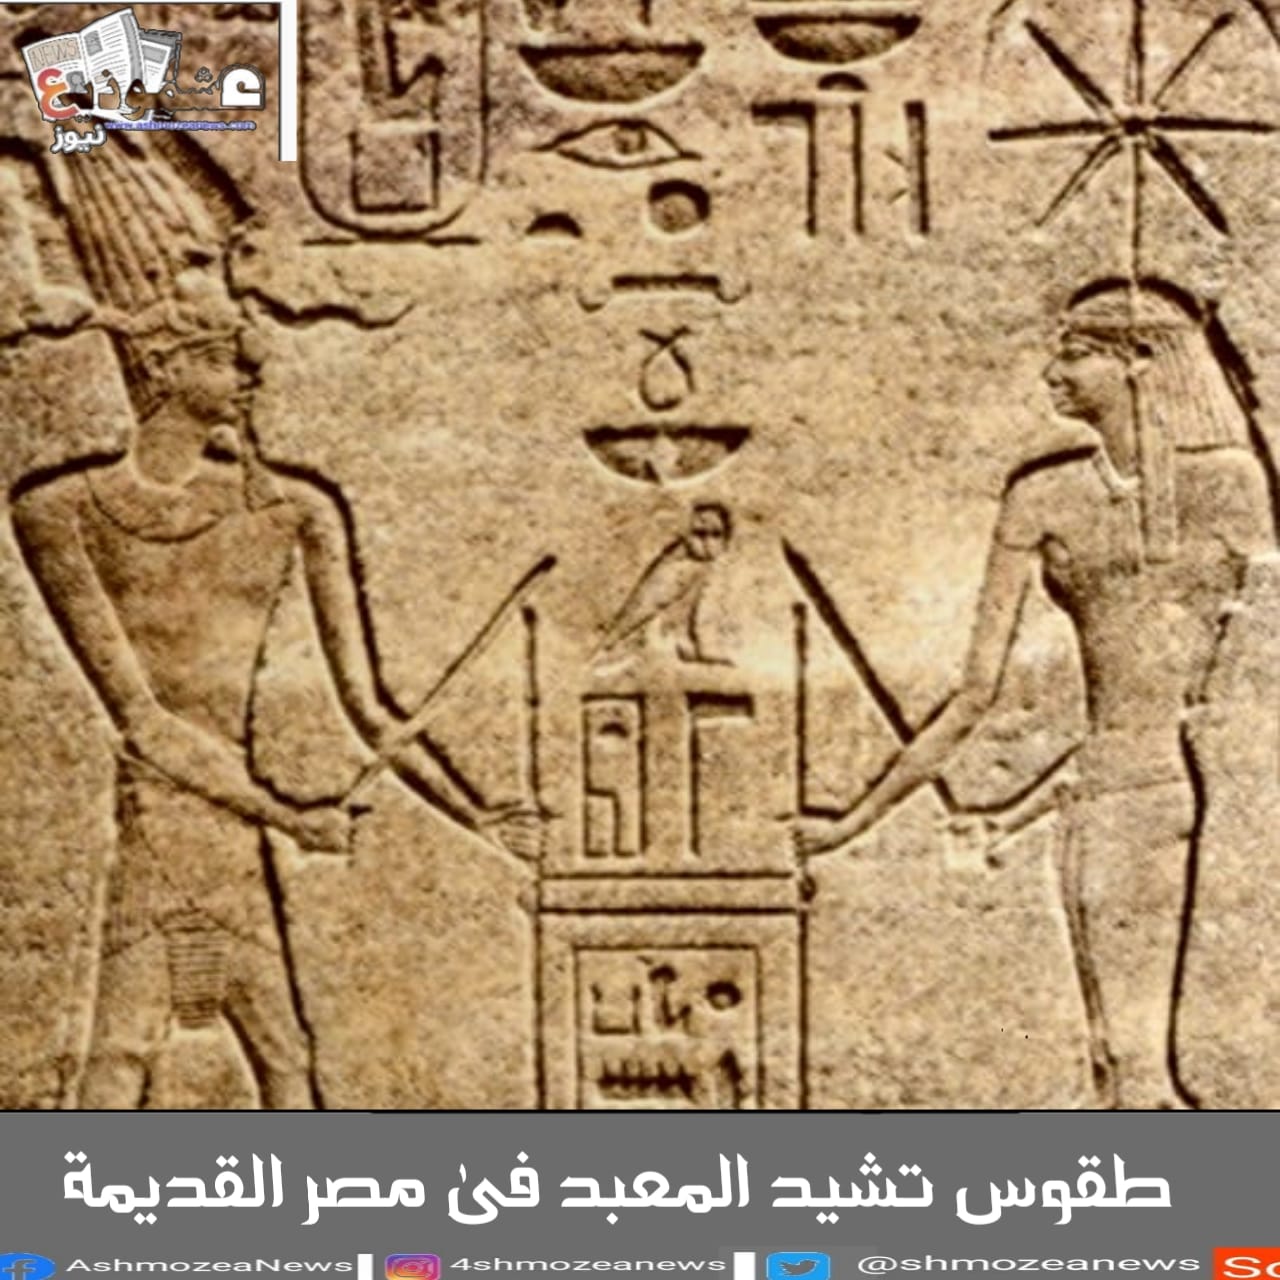 طقوس تشيد المعبد فى مصر القديمة